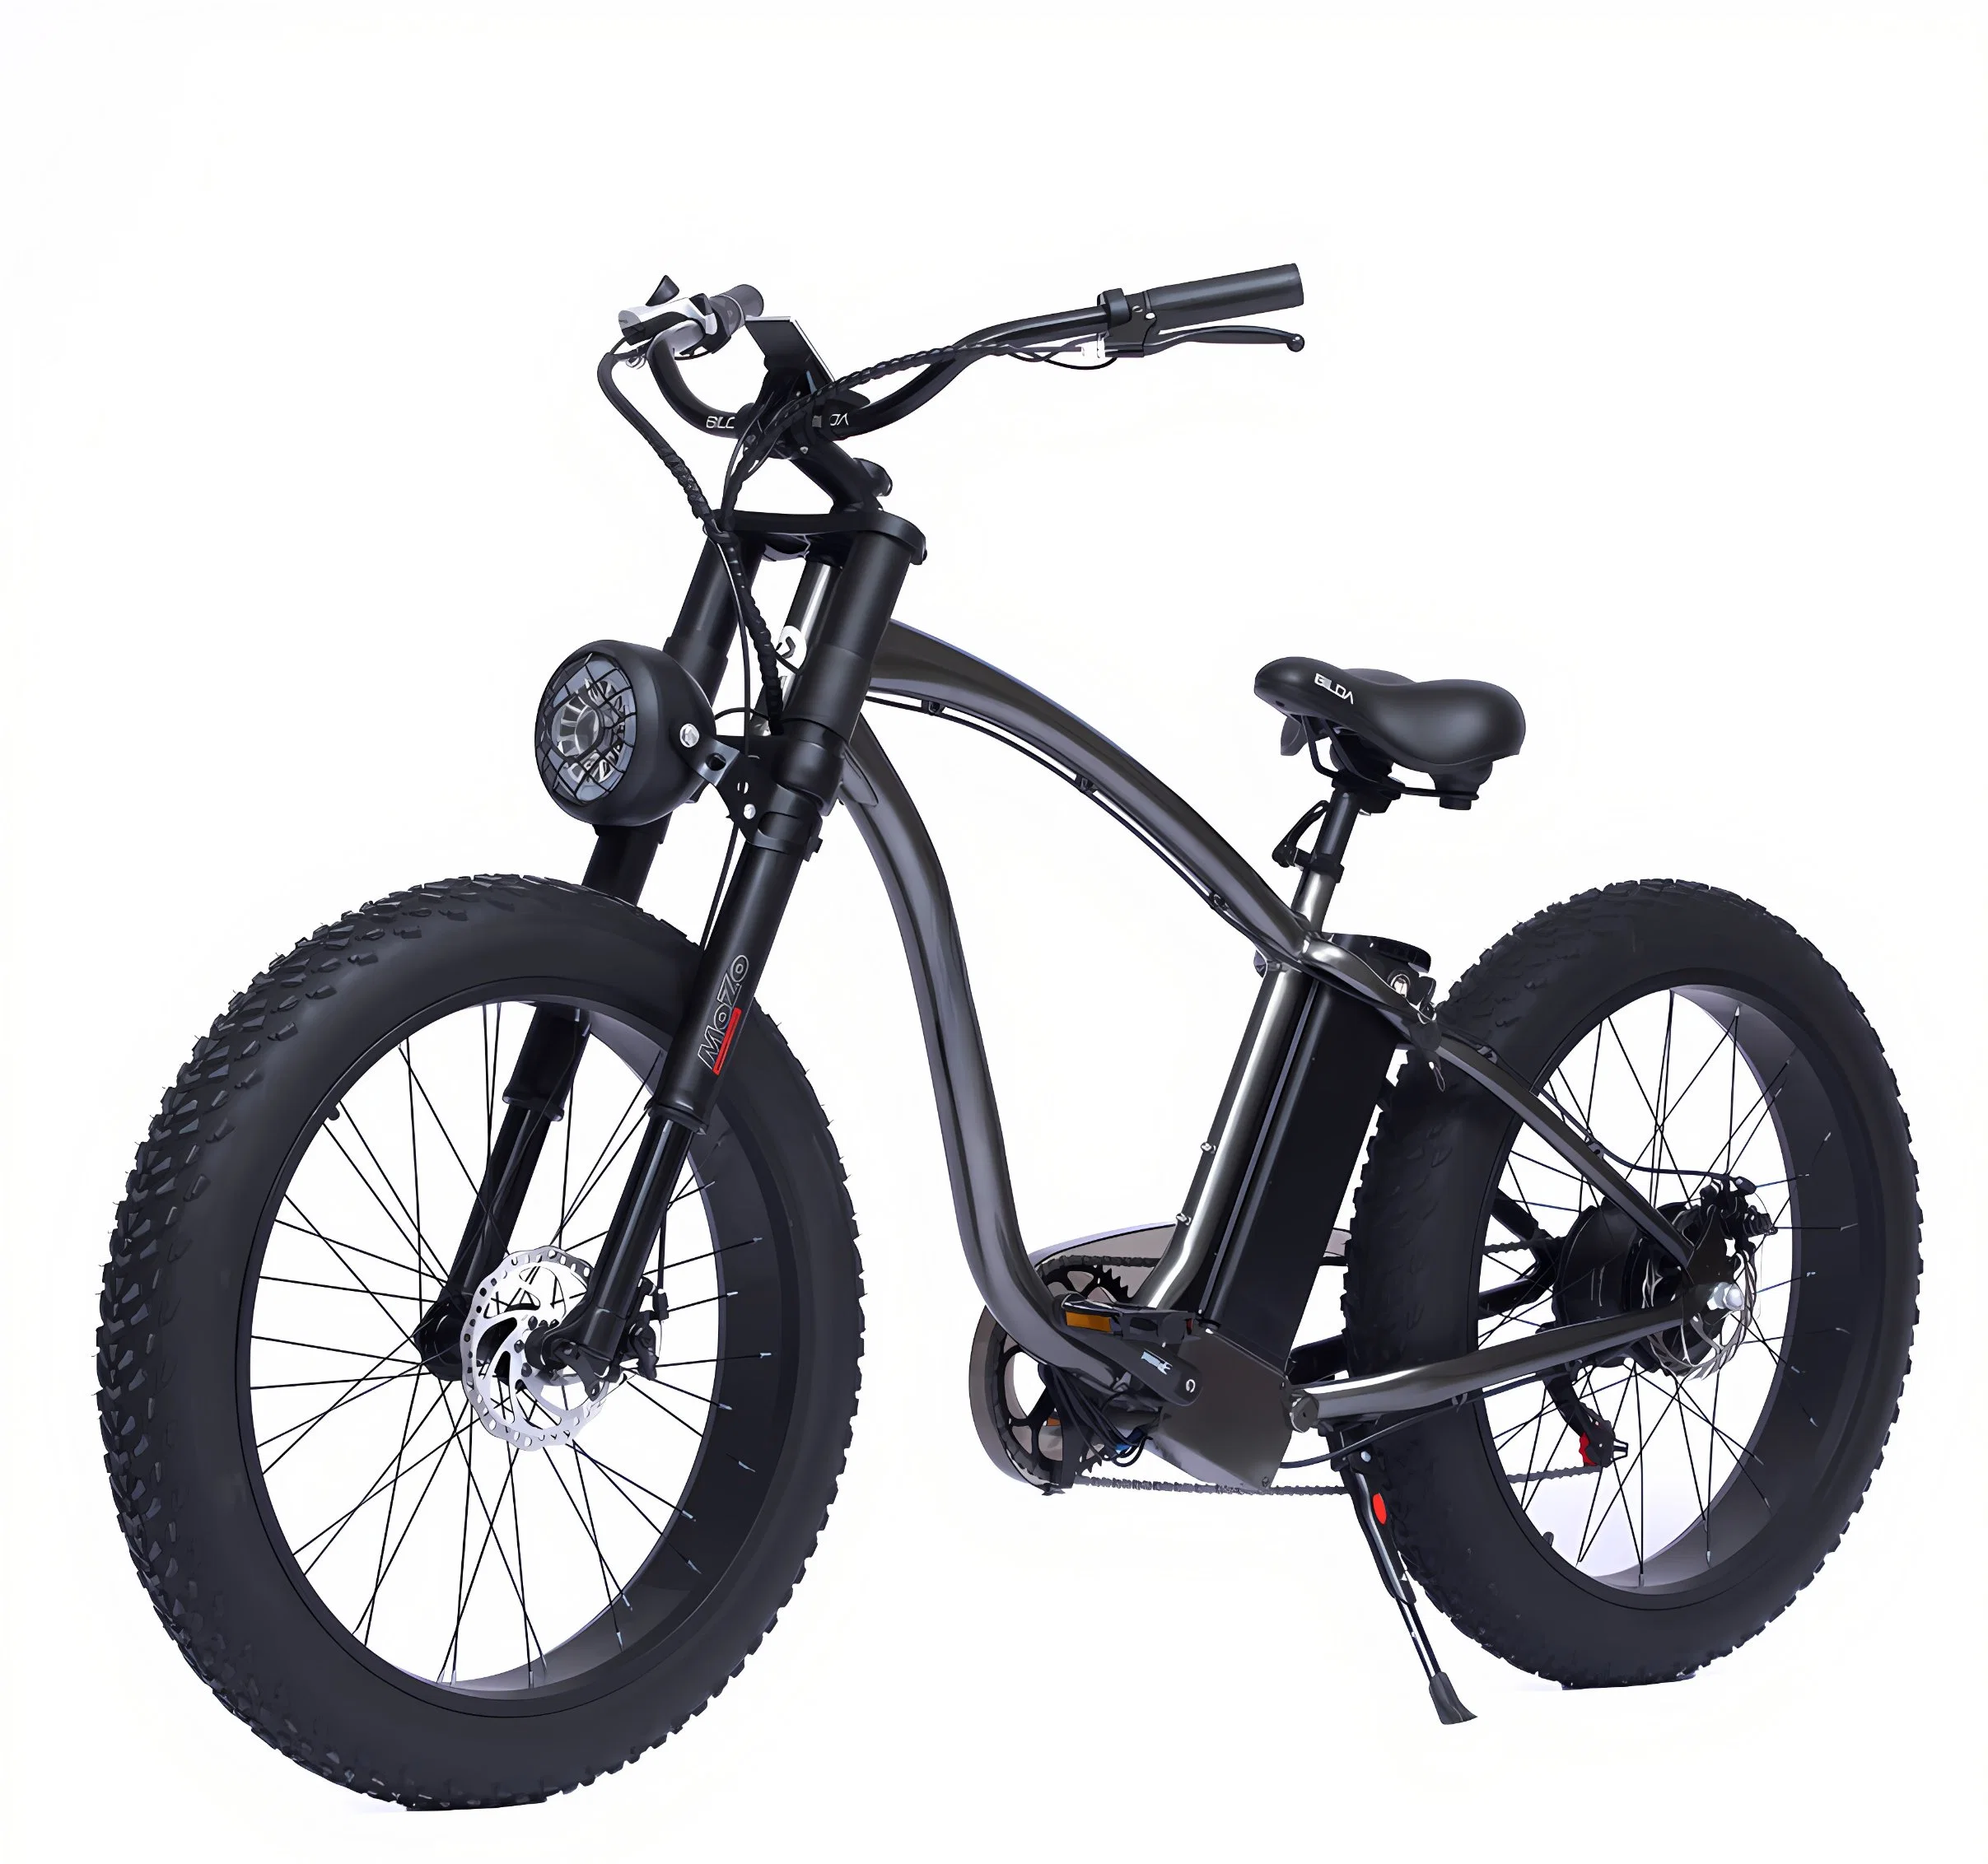 48V 500 W de potência de 750W China barato suspensão total retro e Vintage Ebike bicicletas de montanha de sujeira pneu gordura Aluguer de bicicleta eléctrica